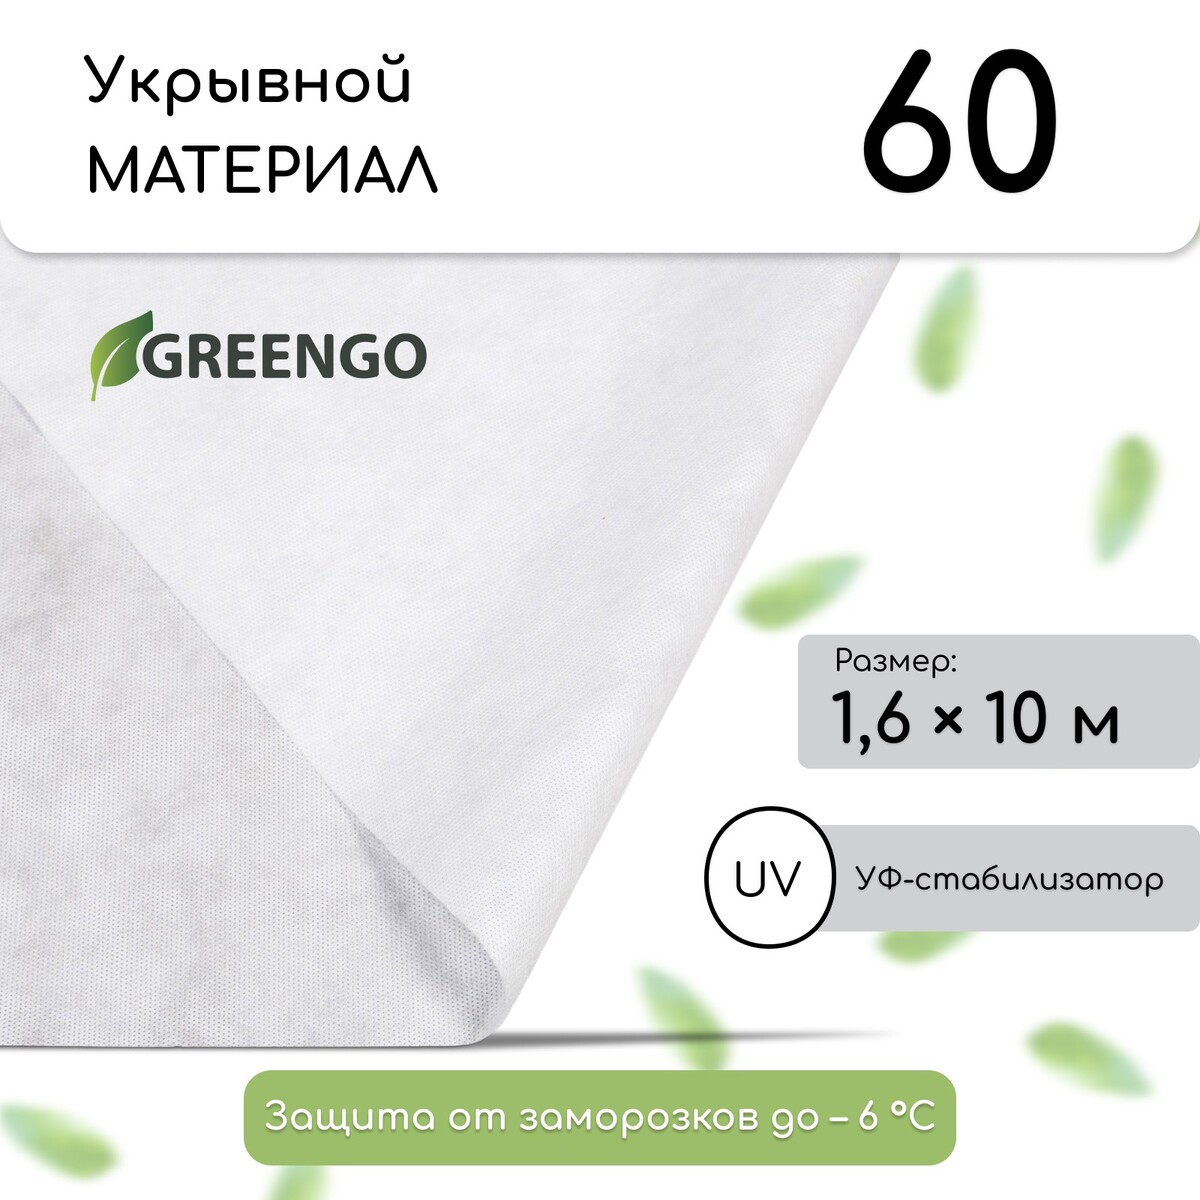 Материал укрывной, 10 × 1,6 м, плотность 60 г/м², спанбонд с уф-стабилизатором, белый, greengo, эконом 30%